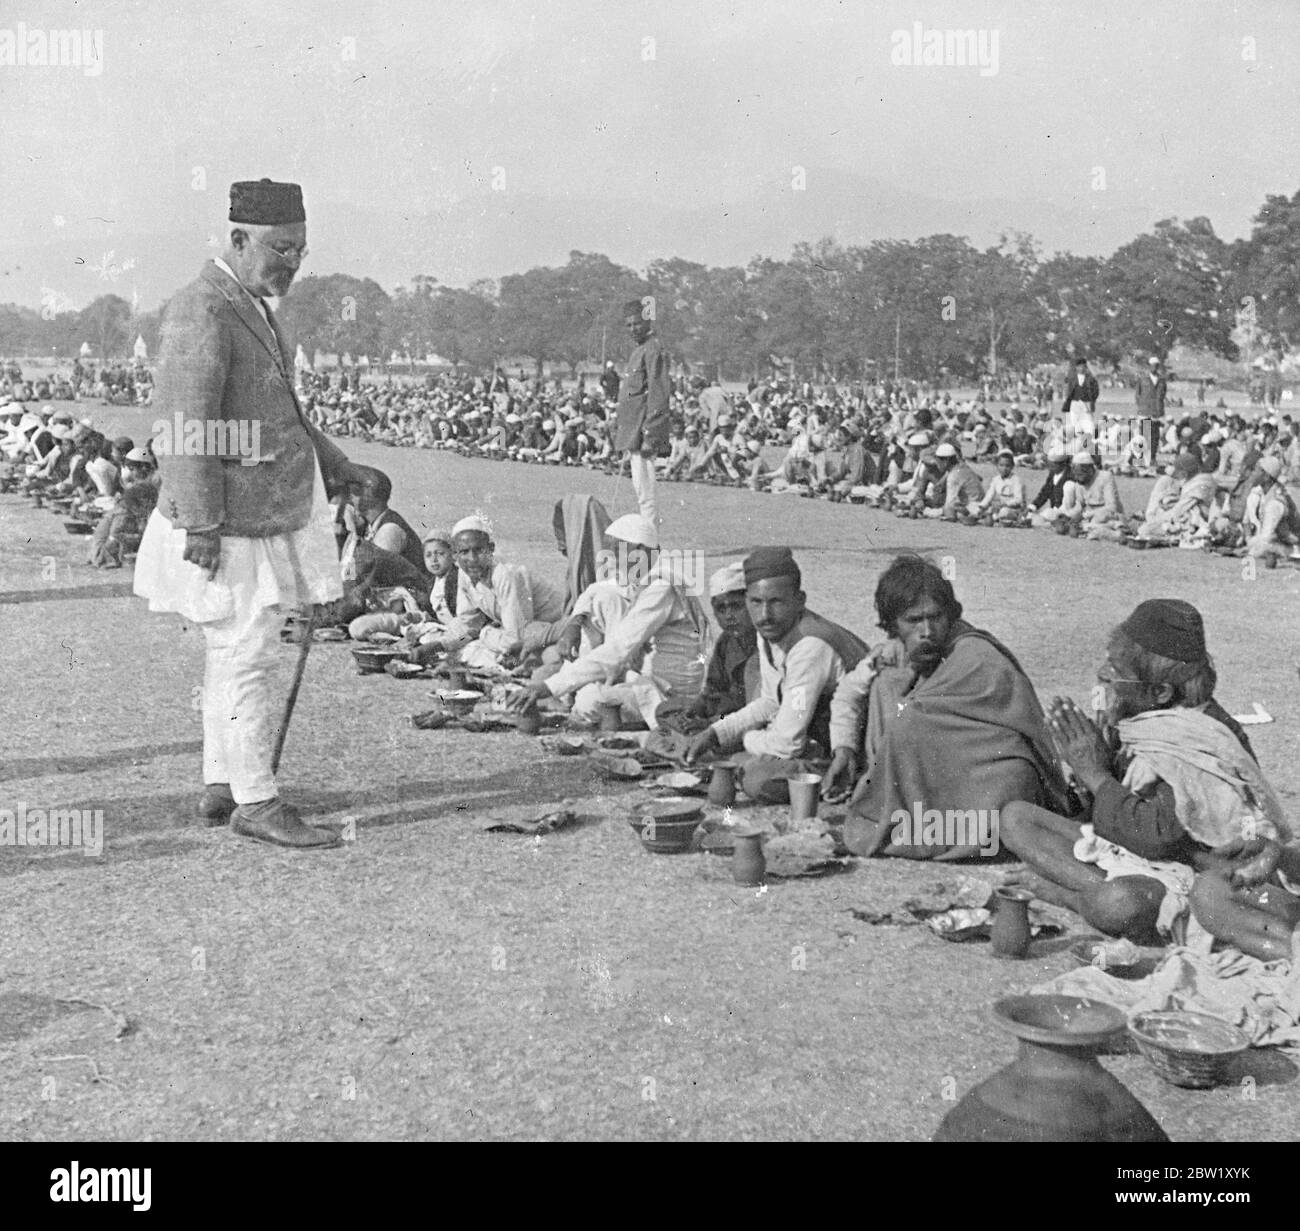 Photos exclusives du jubilé d'argent du Roi du Népal. Ces photos exclusives illustrent les célébrations qui ont eu lieu dans le cadre du jubilé d'argent de la Trubhubana bis Vikram Sah, roi du Népal de 31 ans, qui est arrivé au trône en 1911. Toute la capitale a mis sur Gala tenue et des dizaines de milliers de sujets ont regardé la parade des éléphants de joailliers et toute l'armée en revue. Ces photos ont été prises sur invitation spéciale dans la capitale, Katmandou. Photos, le souverain Sacrificateur s'adressant à l'un des pauvres à l'alimentation de masse de plusieurs milliers arrangés par le Népal Banque D'Images